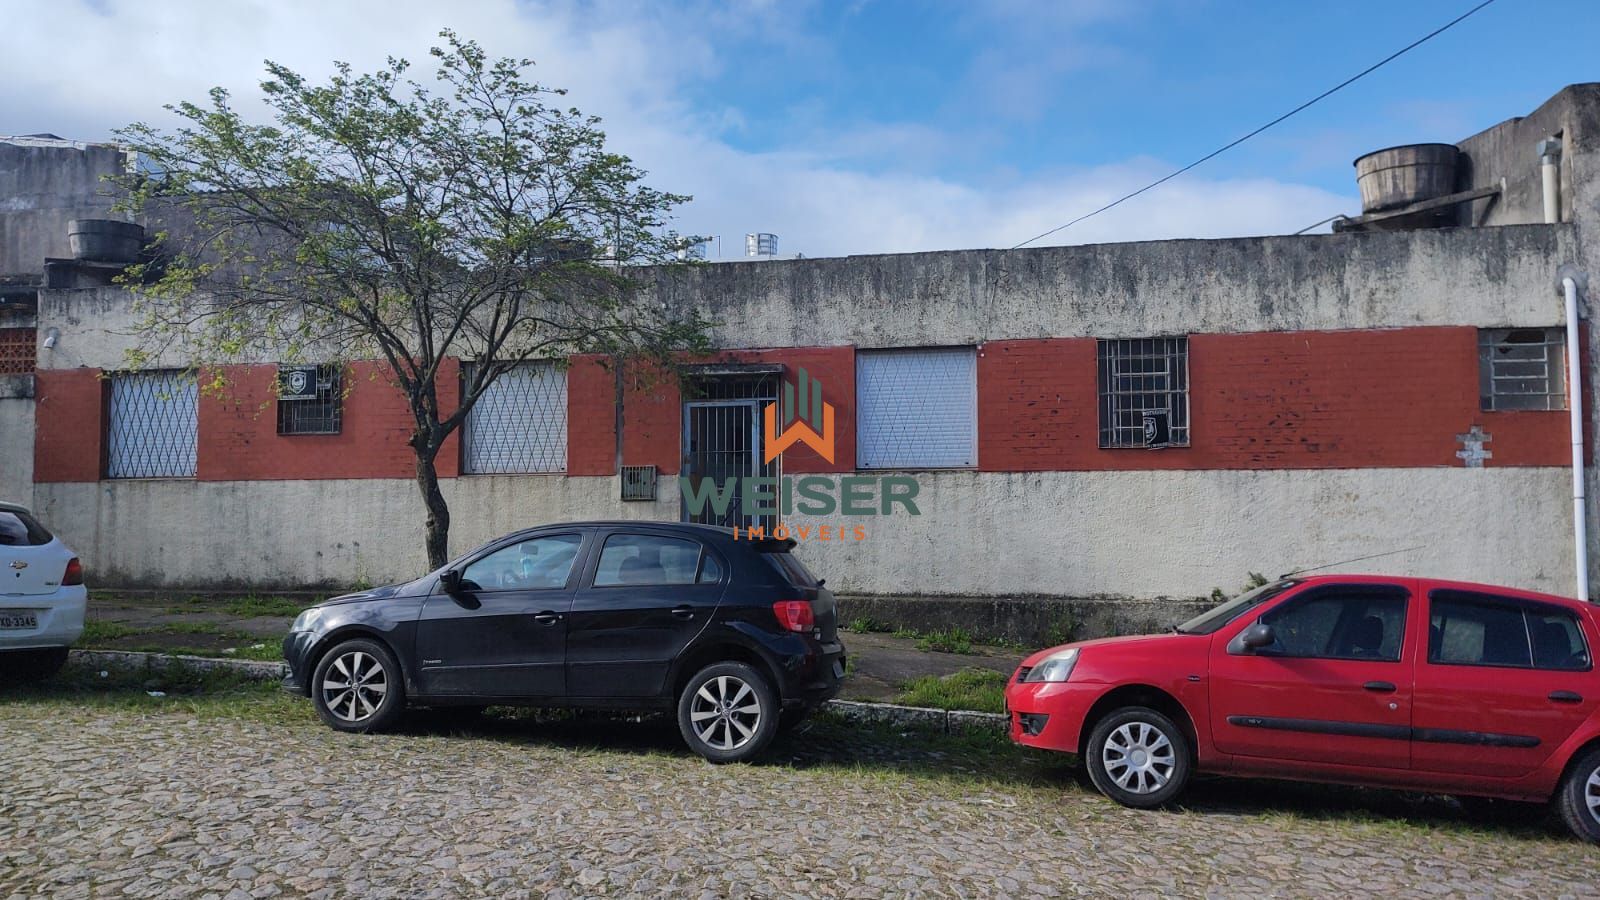 Casa  venda  no Centro - Pelotas, RS. Imveis